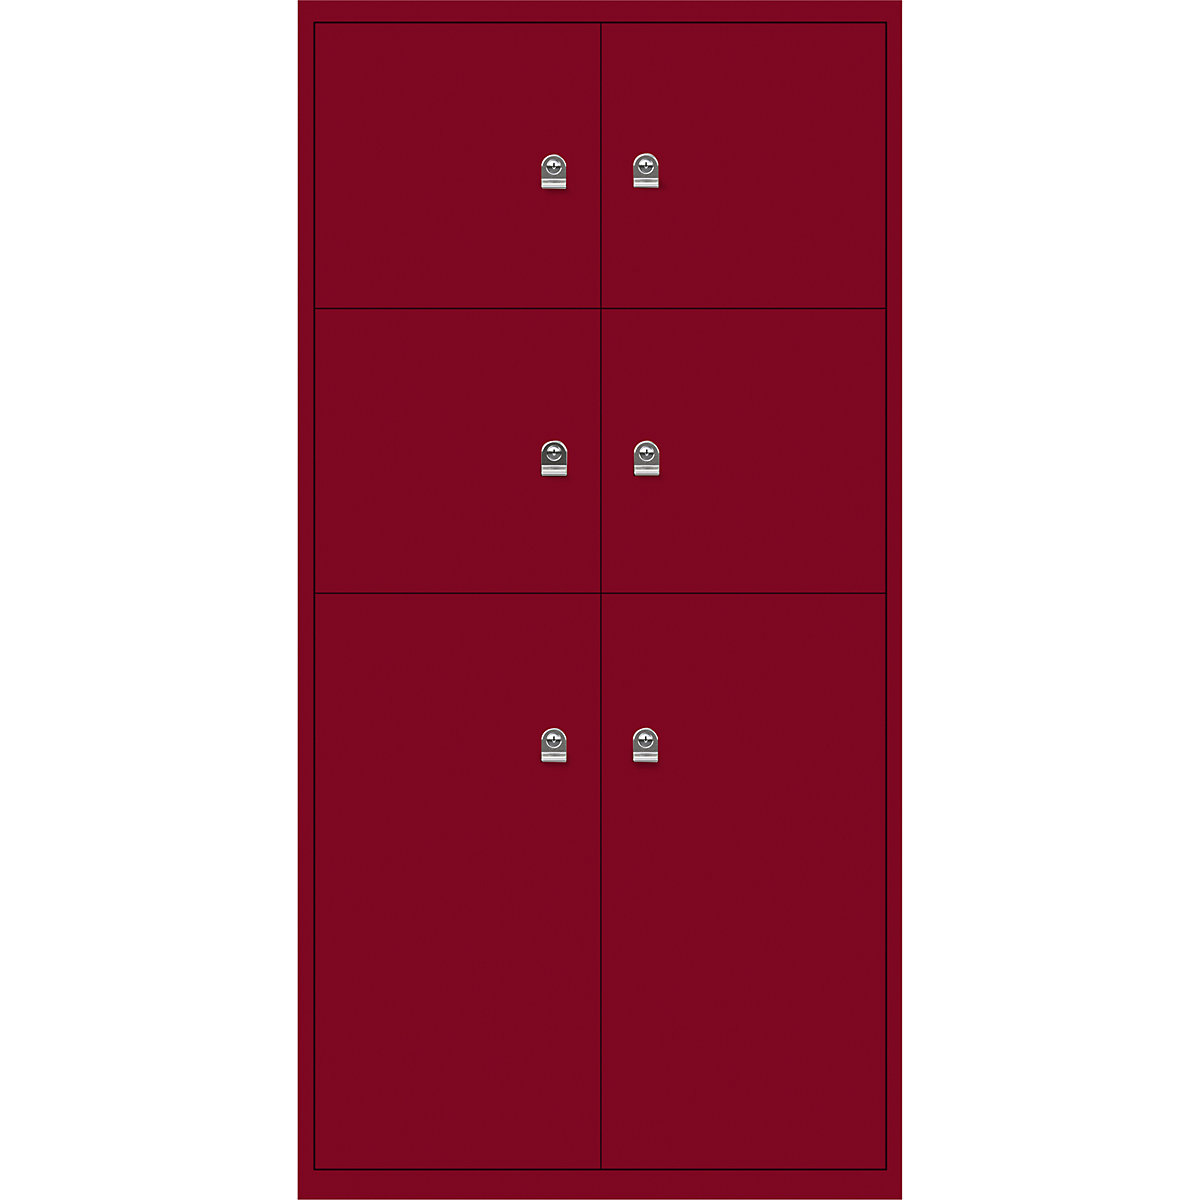 LateralFile™ Lodge – BISLEY, so 6 uzamykacími priehradkami, výška 4 x 375 mm, 2 x 755 mm, kardinálska červená-32